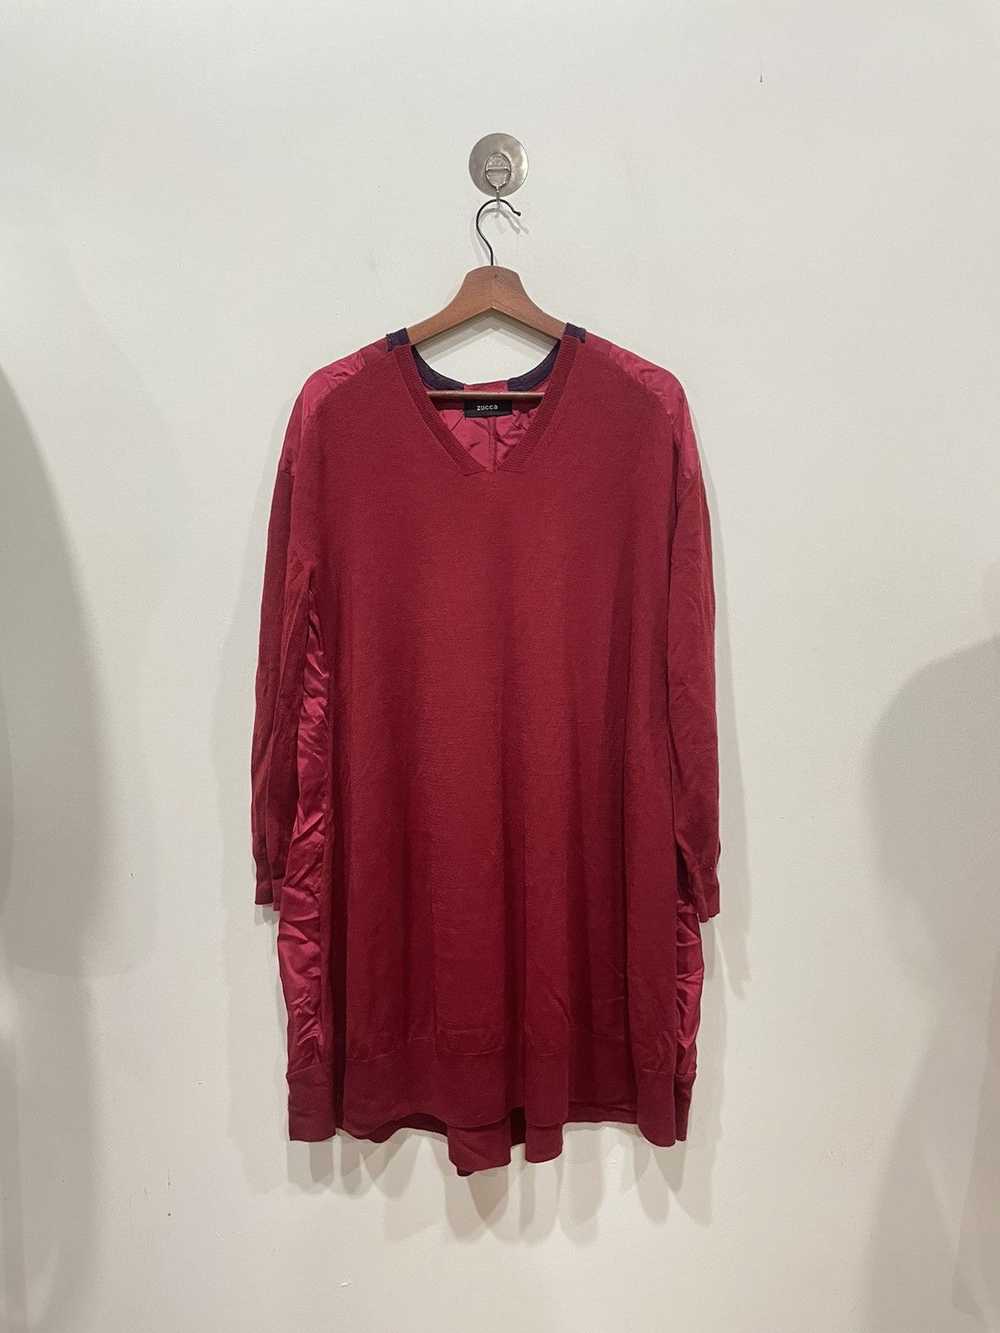 Issey Miyake × Vintage × Zucca Zucca Red Dress - image 1